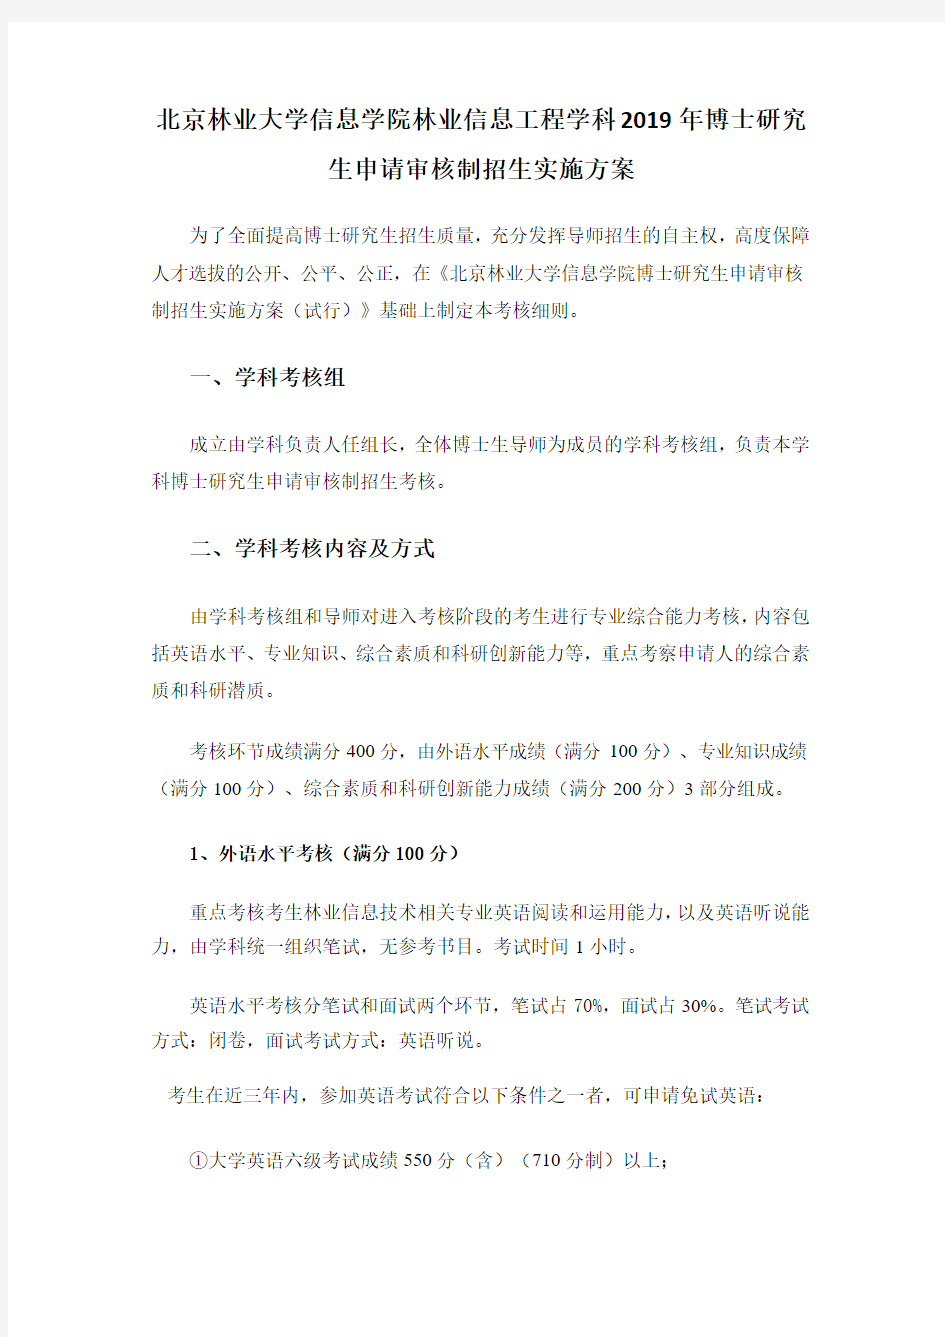 北京林业大学2019年信息学院林业信息工程学科博士研究生申请审核制招生实施方案